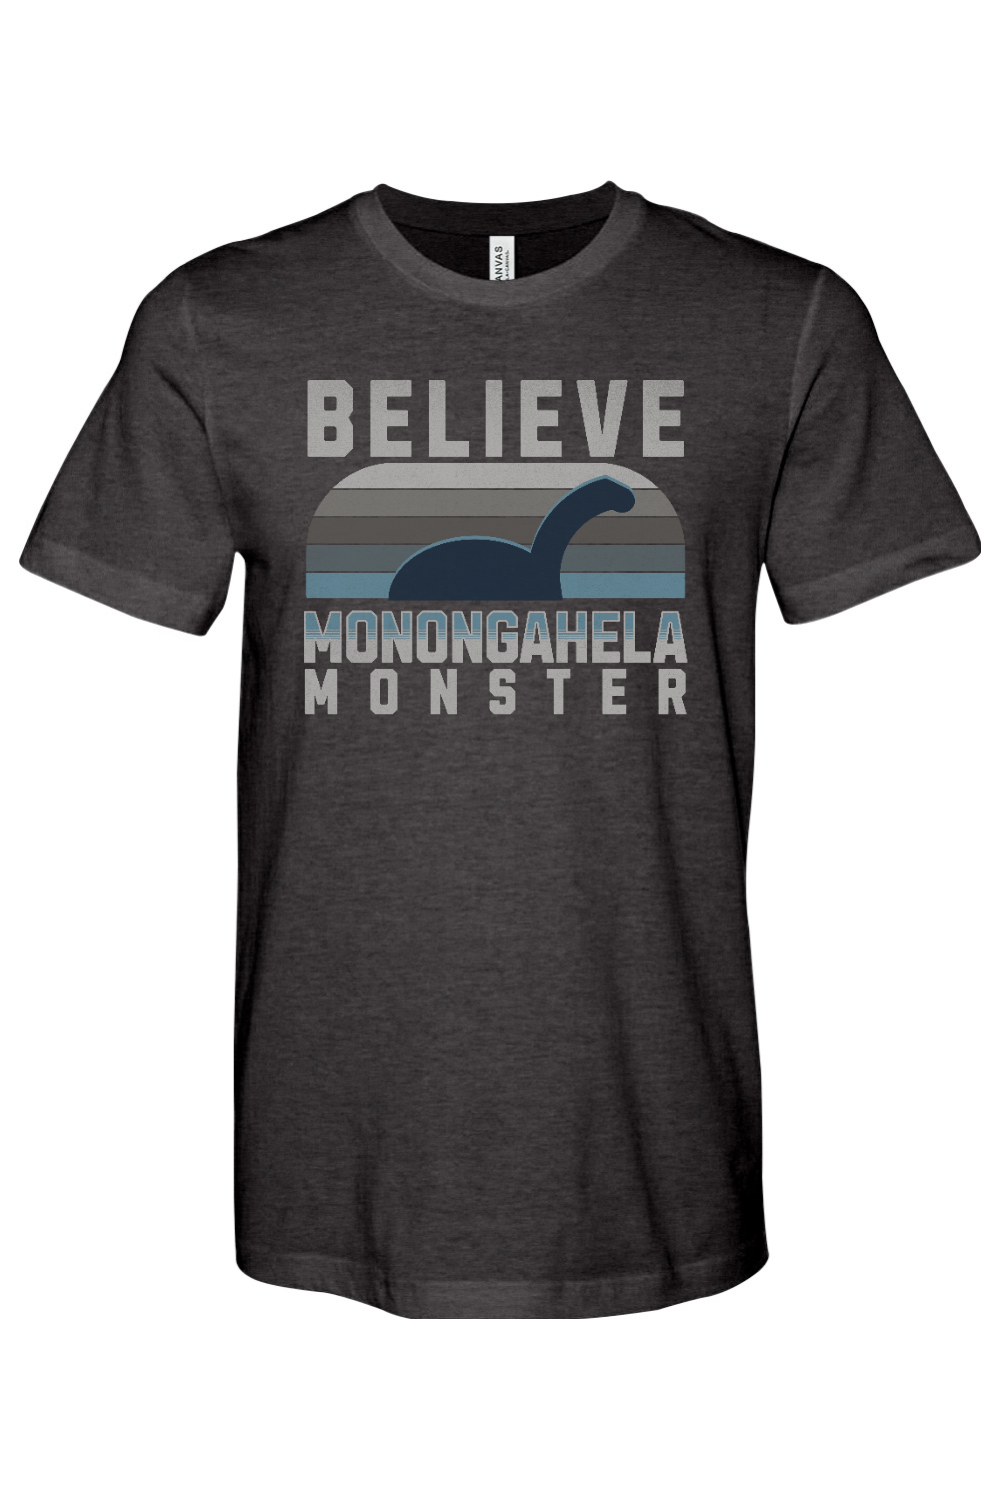 Believe - Monongahela Monster - Yinzylvania